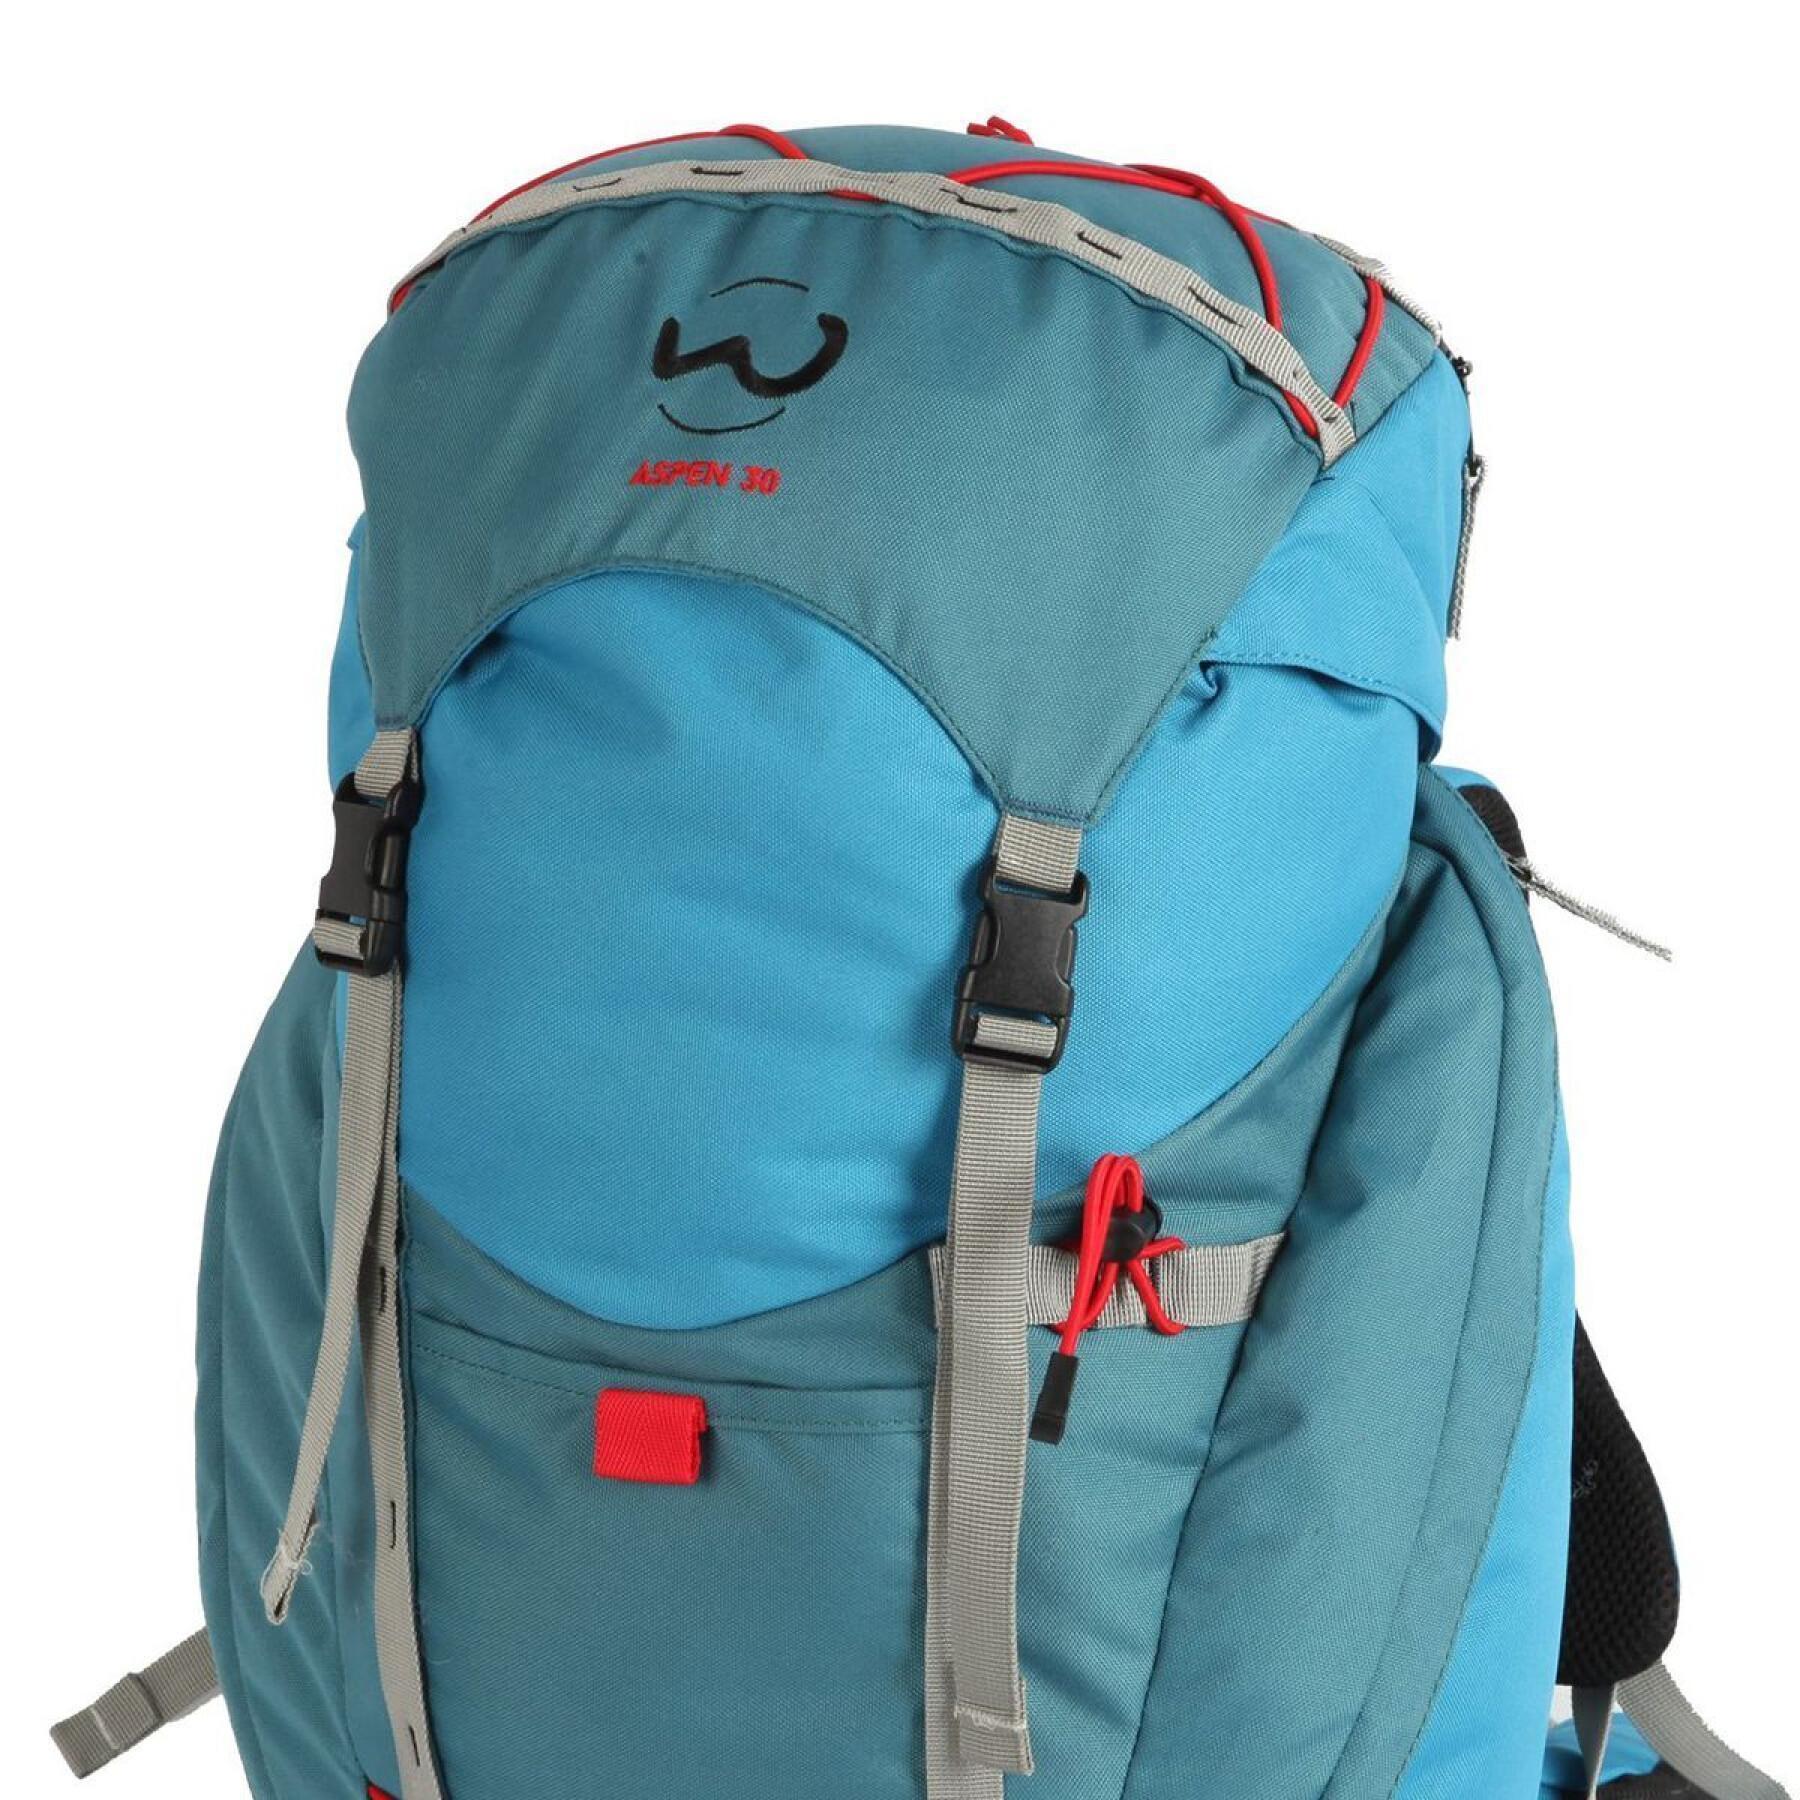 Backpack Wilsa Outdoor Aspen 30 L